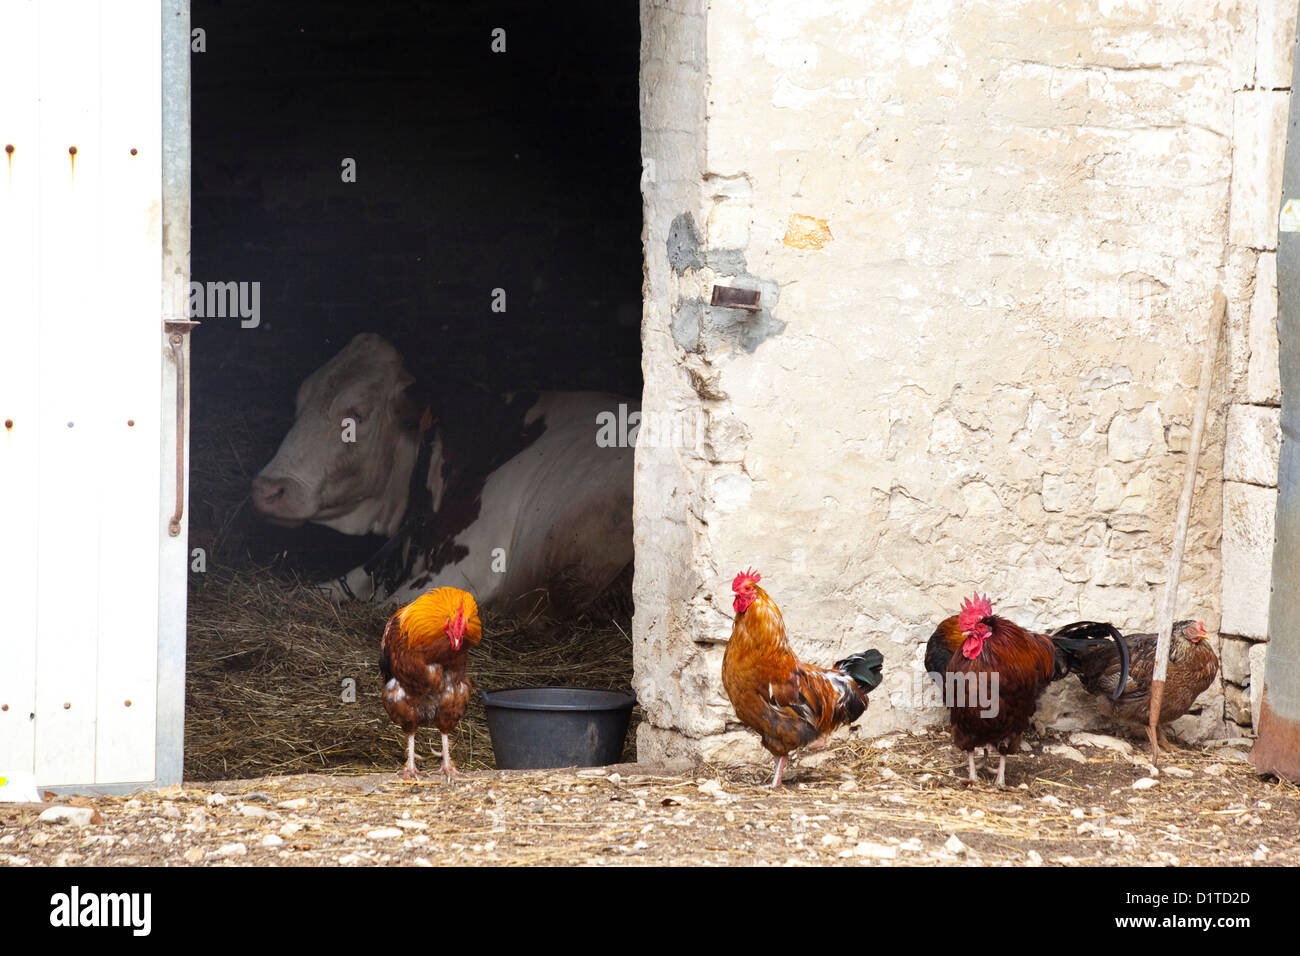 Barnyard imagen. Una vaca sentada dentro de un granero de ladrillo blanco mientras coloridos gallos se reúnen frente a la puerta. Foto de stock